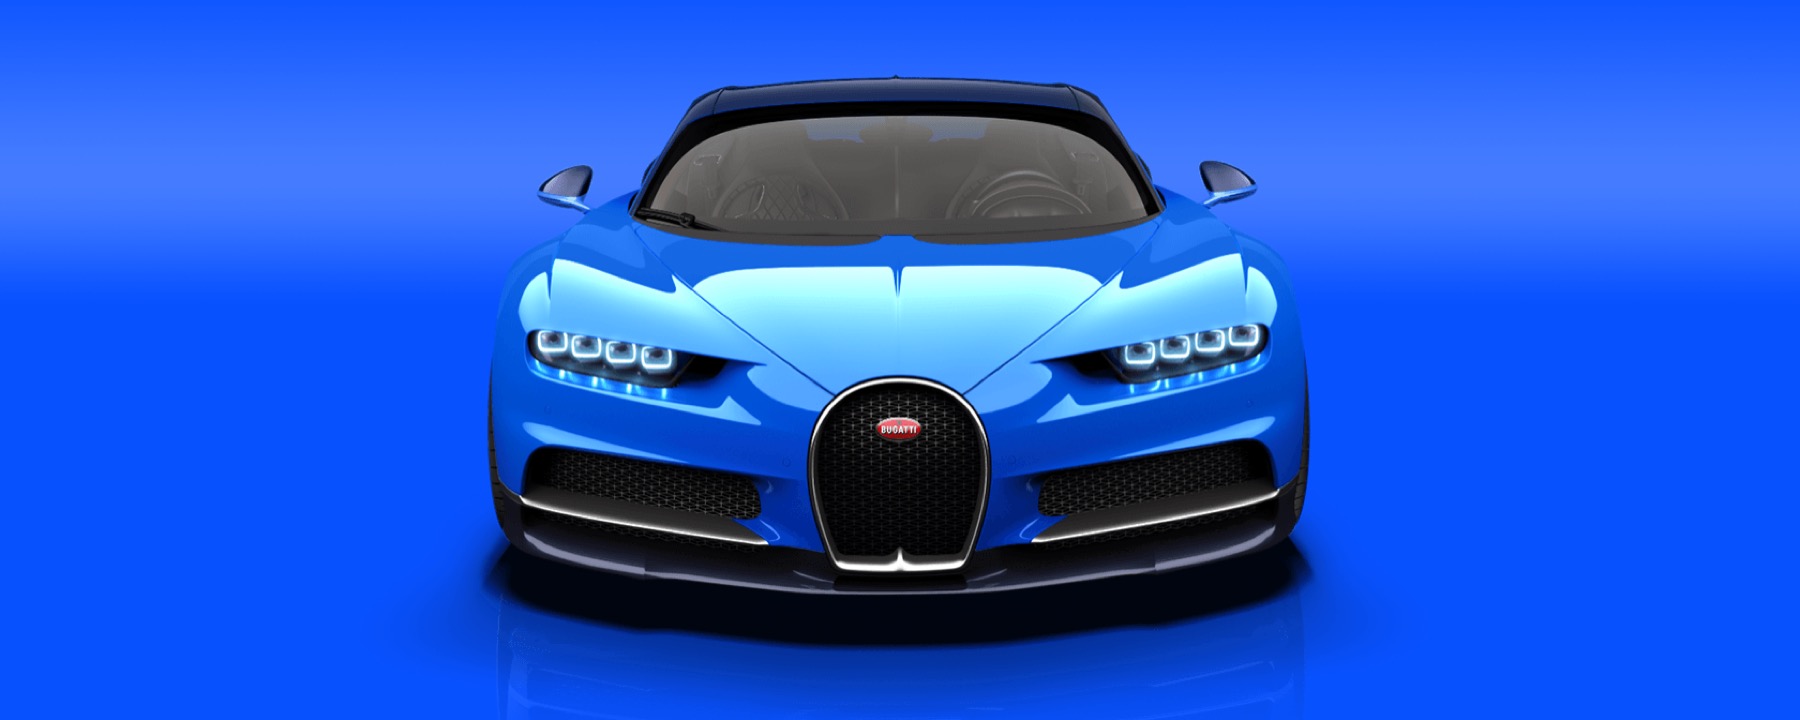 Revamped Chiron: Bugatti Chiron đã được cải tiến đầy ấn tượng với sự tinh tế và khéo léo trong mọi chi tiết. Hãy cùng chiêm ngưỡng vẻ đẹp mới của siêu xe này và cảm nhận sự khác biệt tuyệt vời mà sự cải tiến này mang lại. Hình ảnh này chắc chắn sẽ khiến trái tim bạn đập nhanh hơn bao giờ hết.